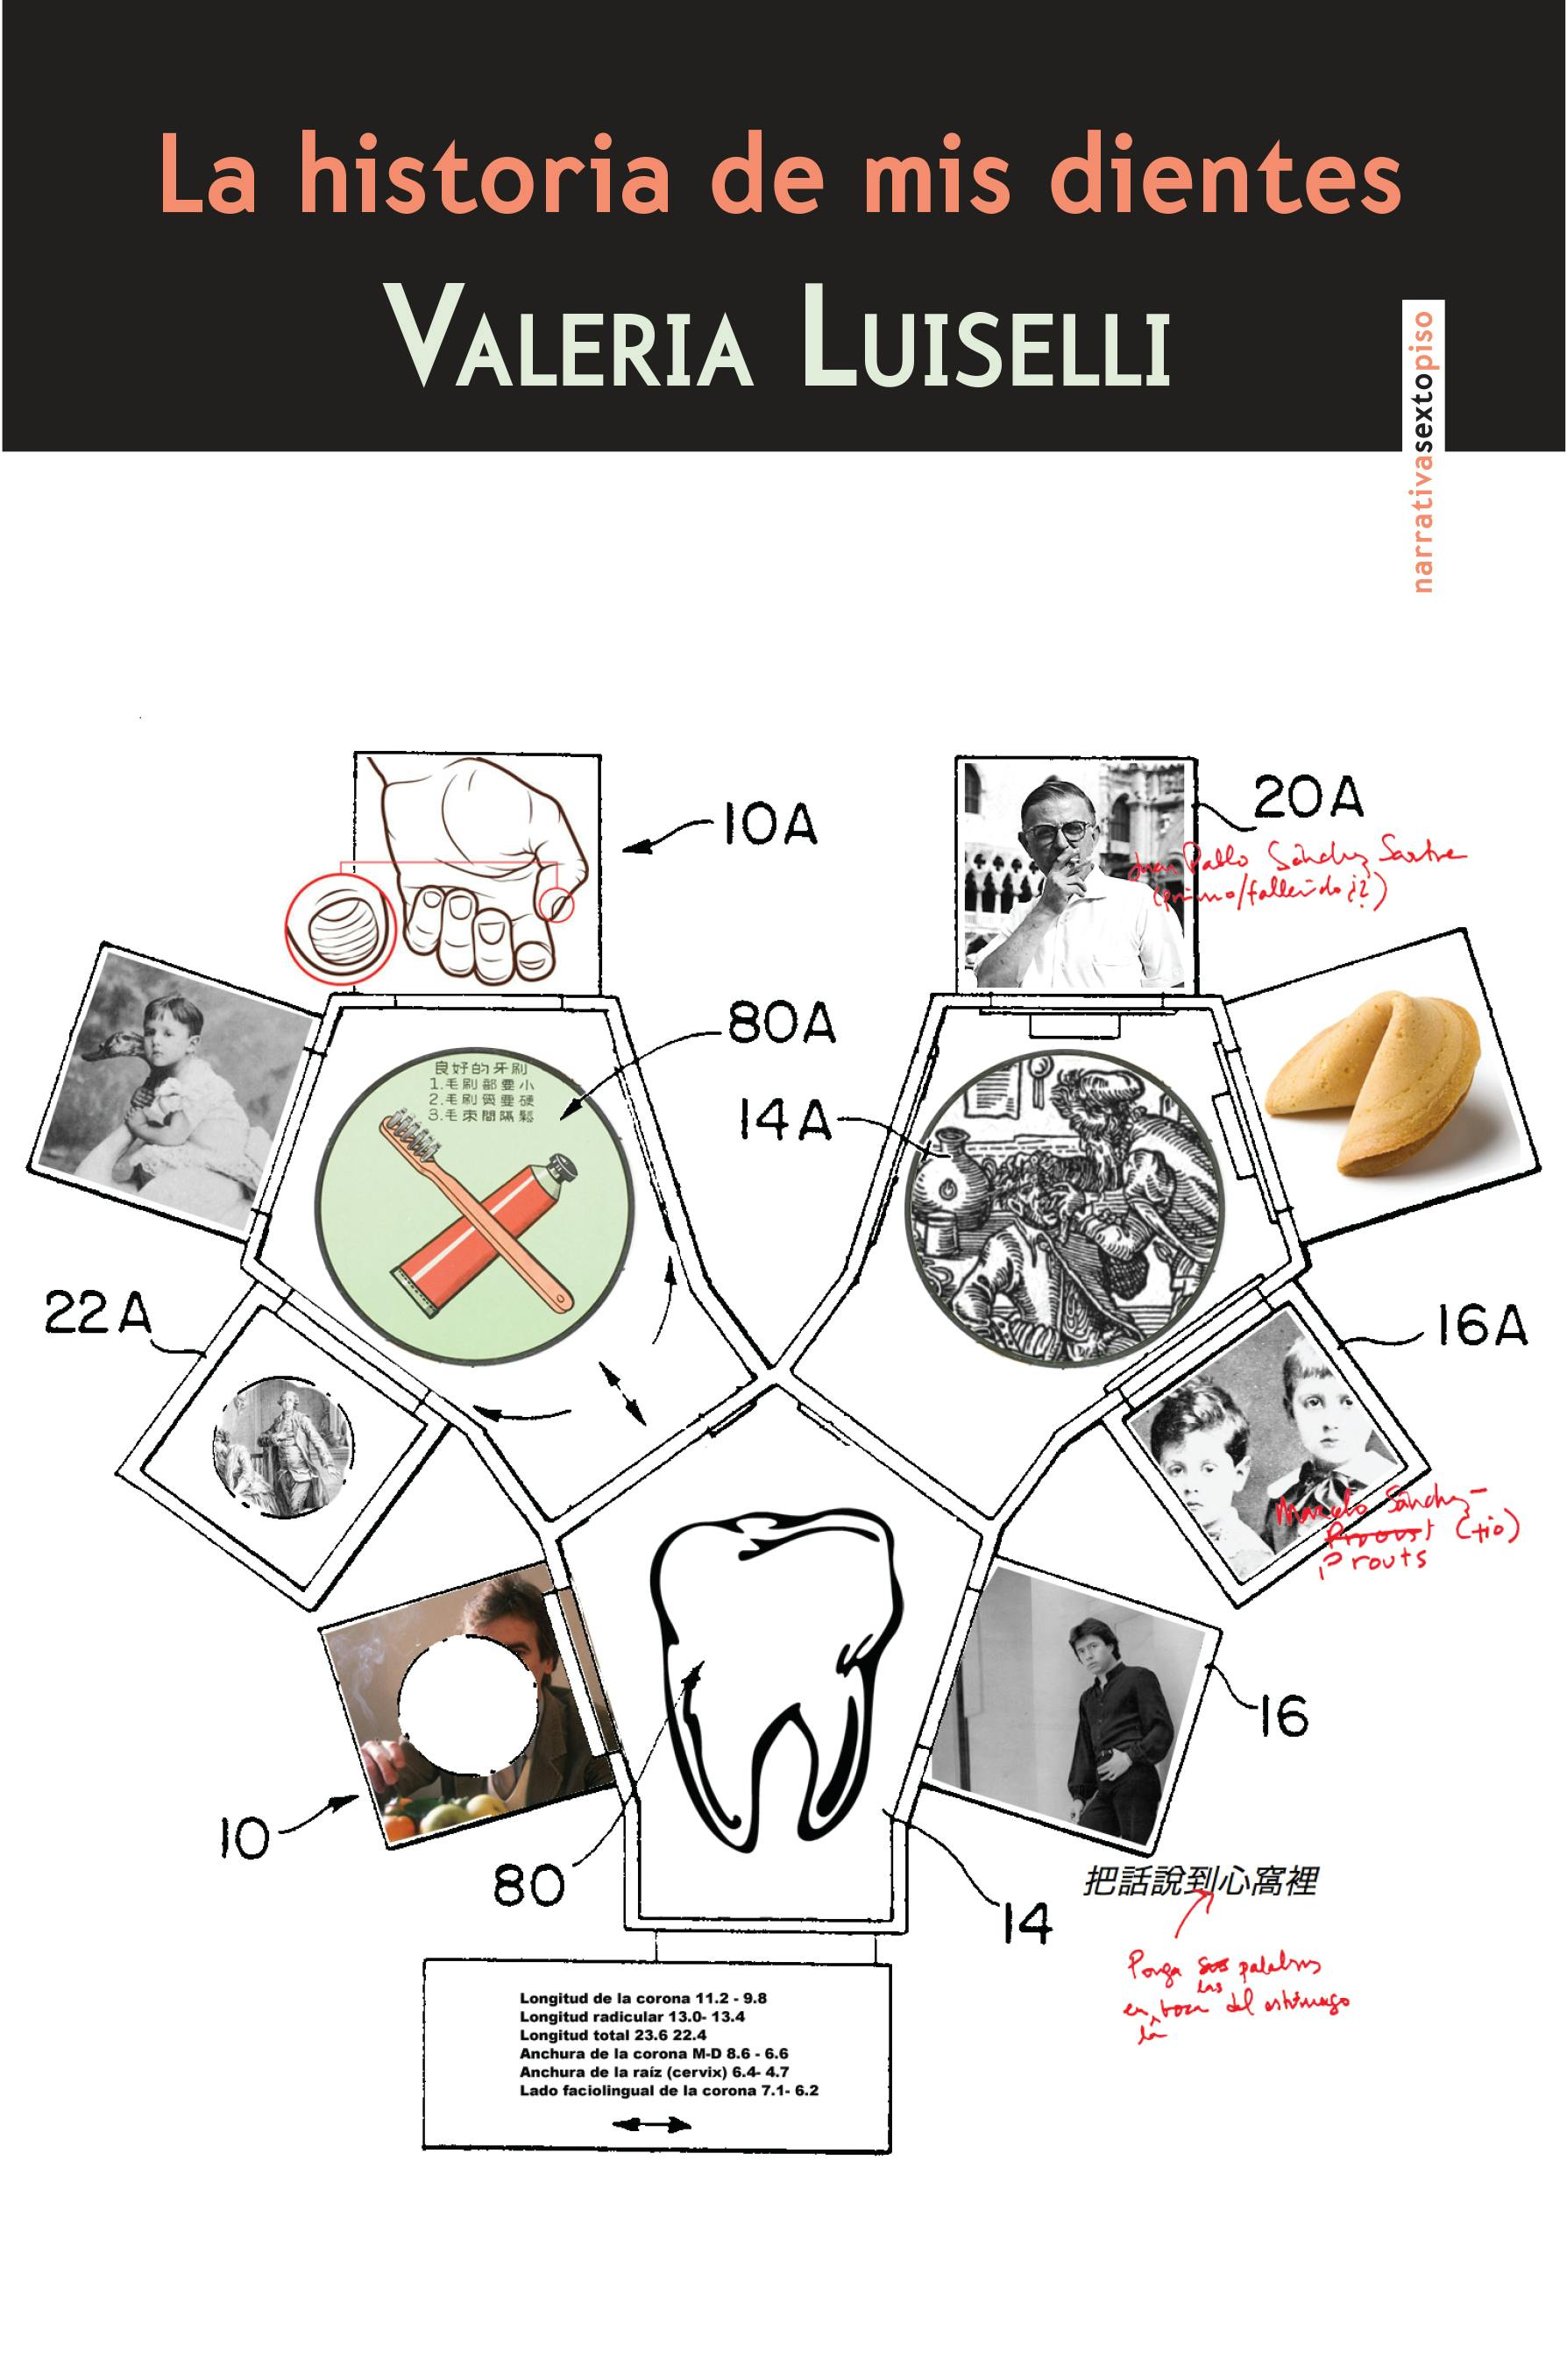 La historia de mis dientes - undefined